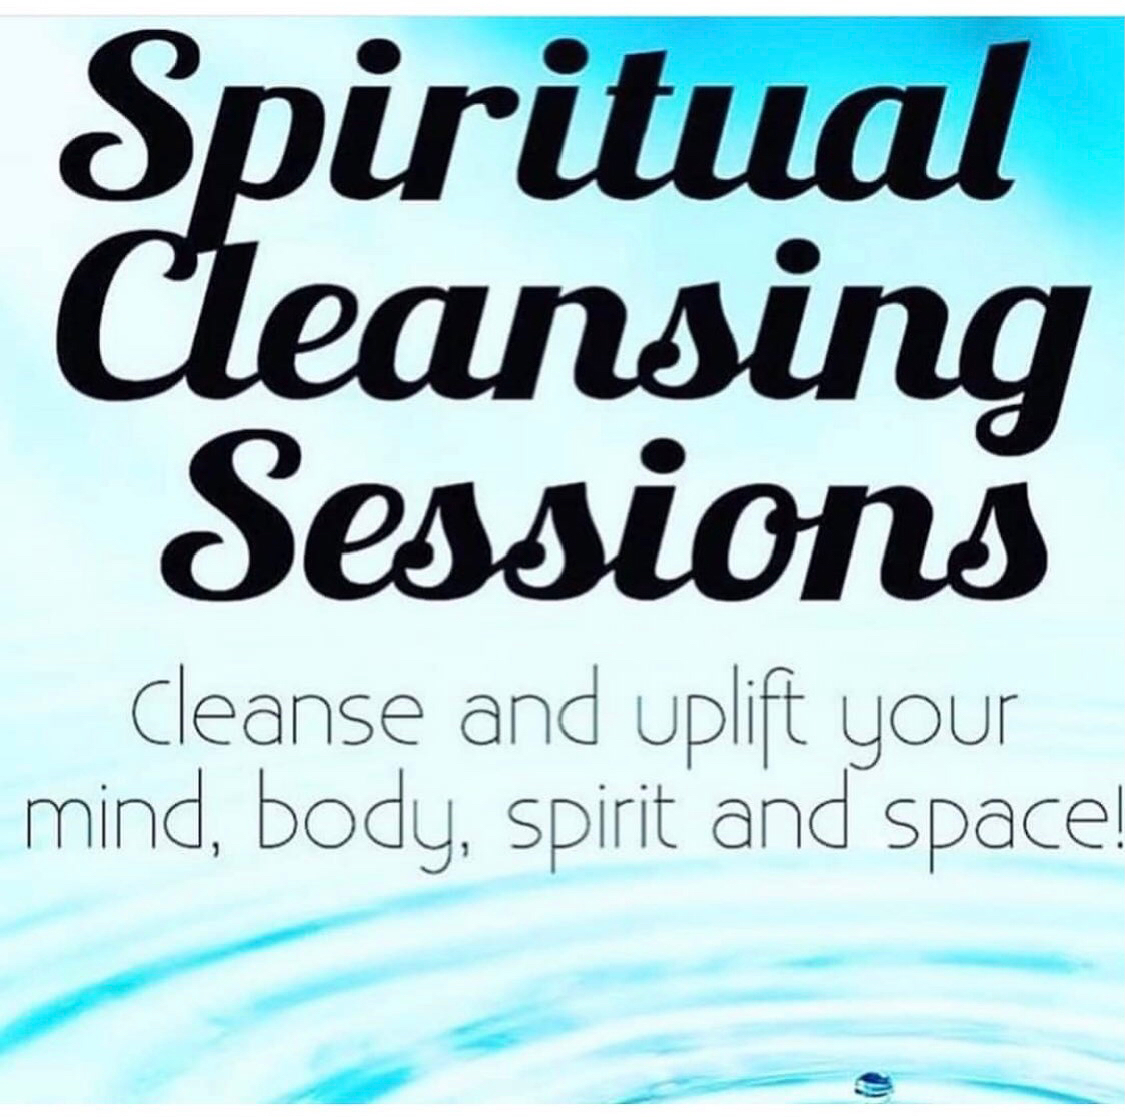 Spiritual cleansing